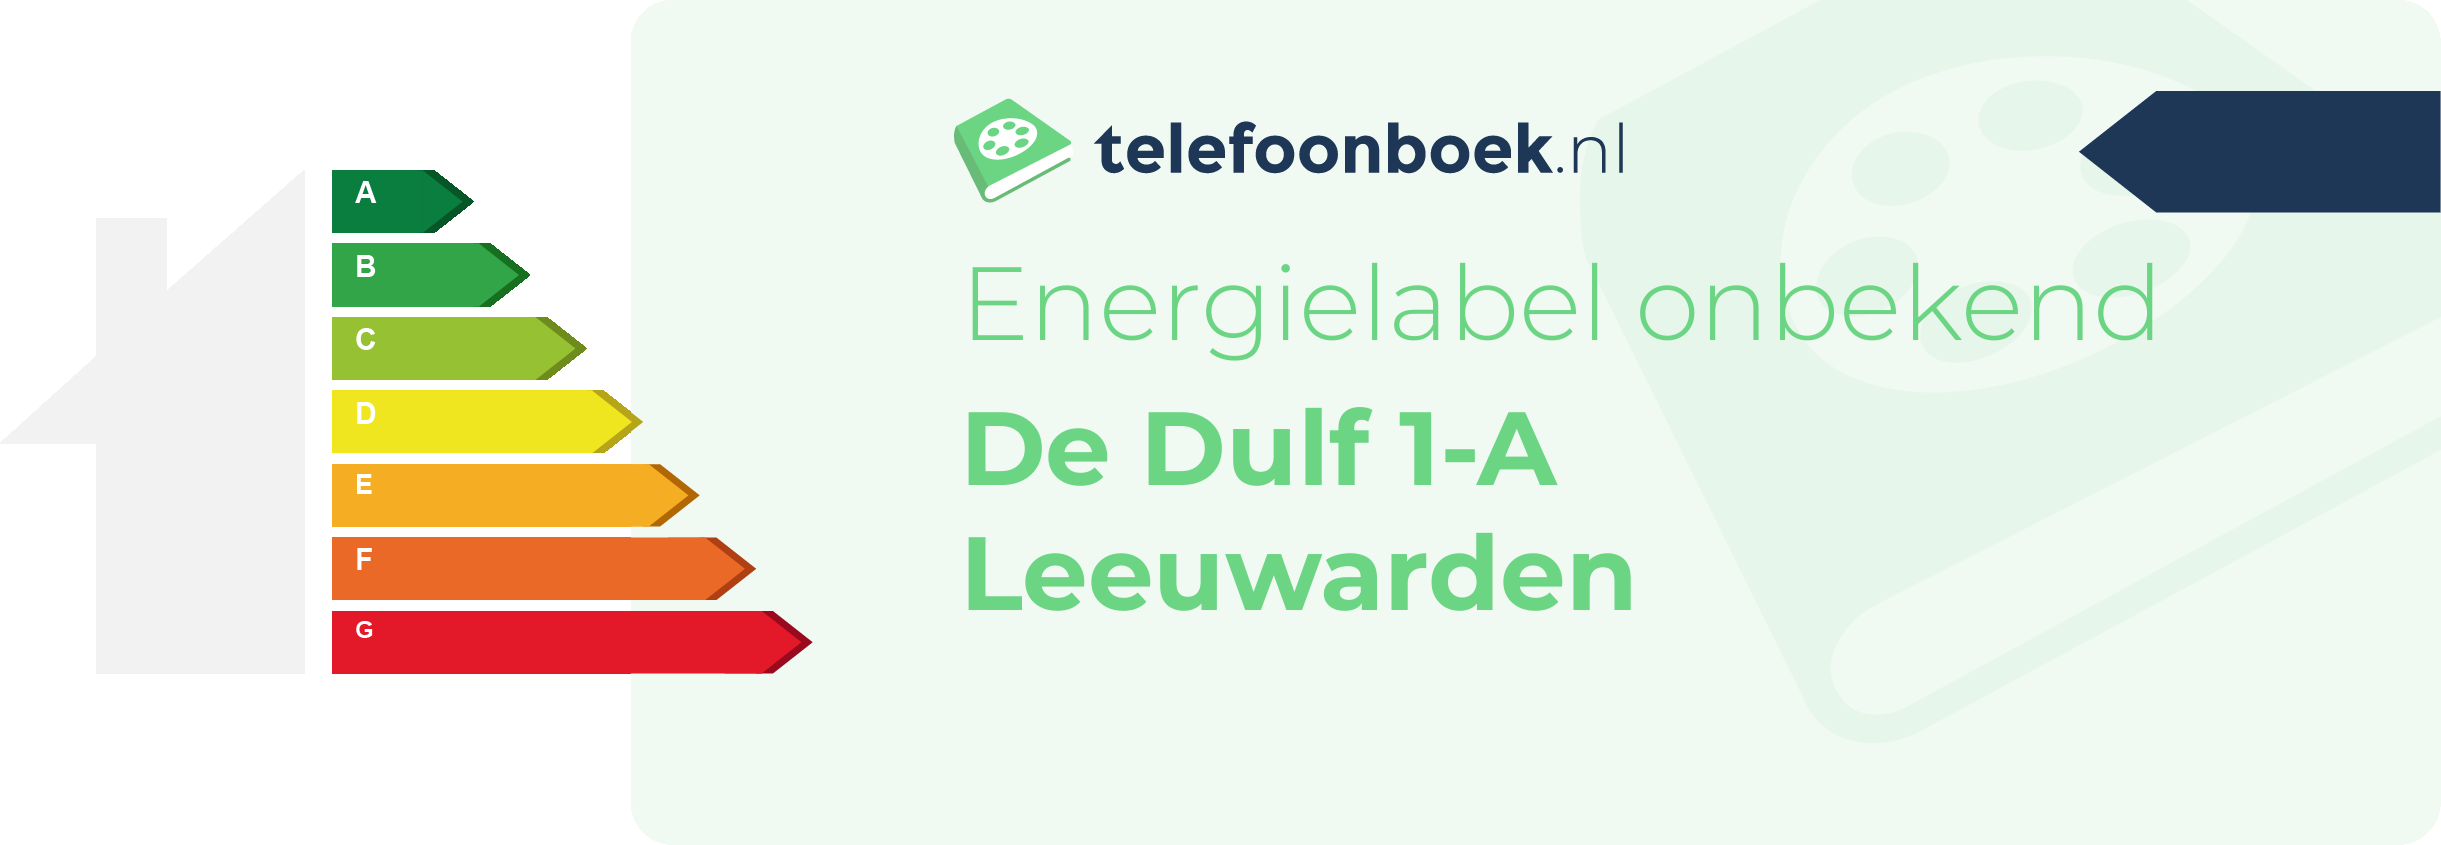 Energielabel De Dulf 1-A Leeuwarden